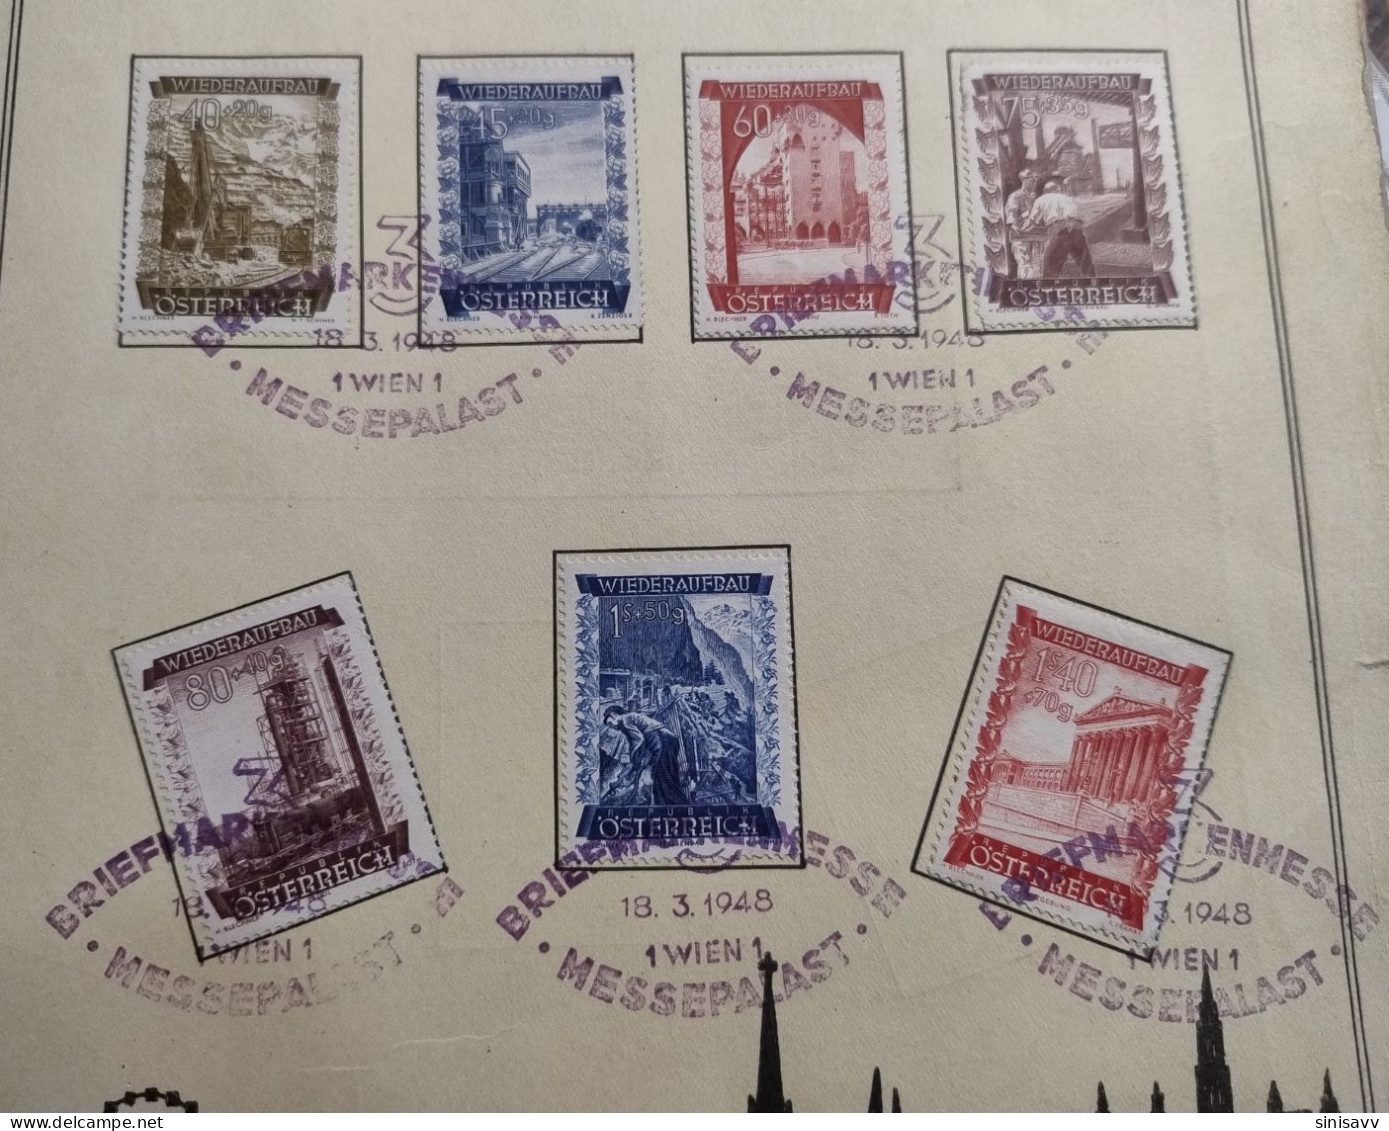 Austria - 3.Briefmarkenmesse , Wien , Messepalast 18.03.1948 - Gebruikt